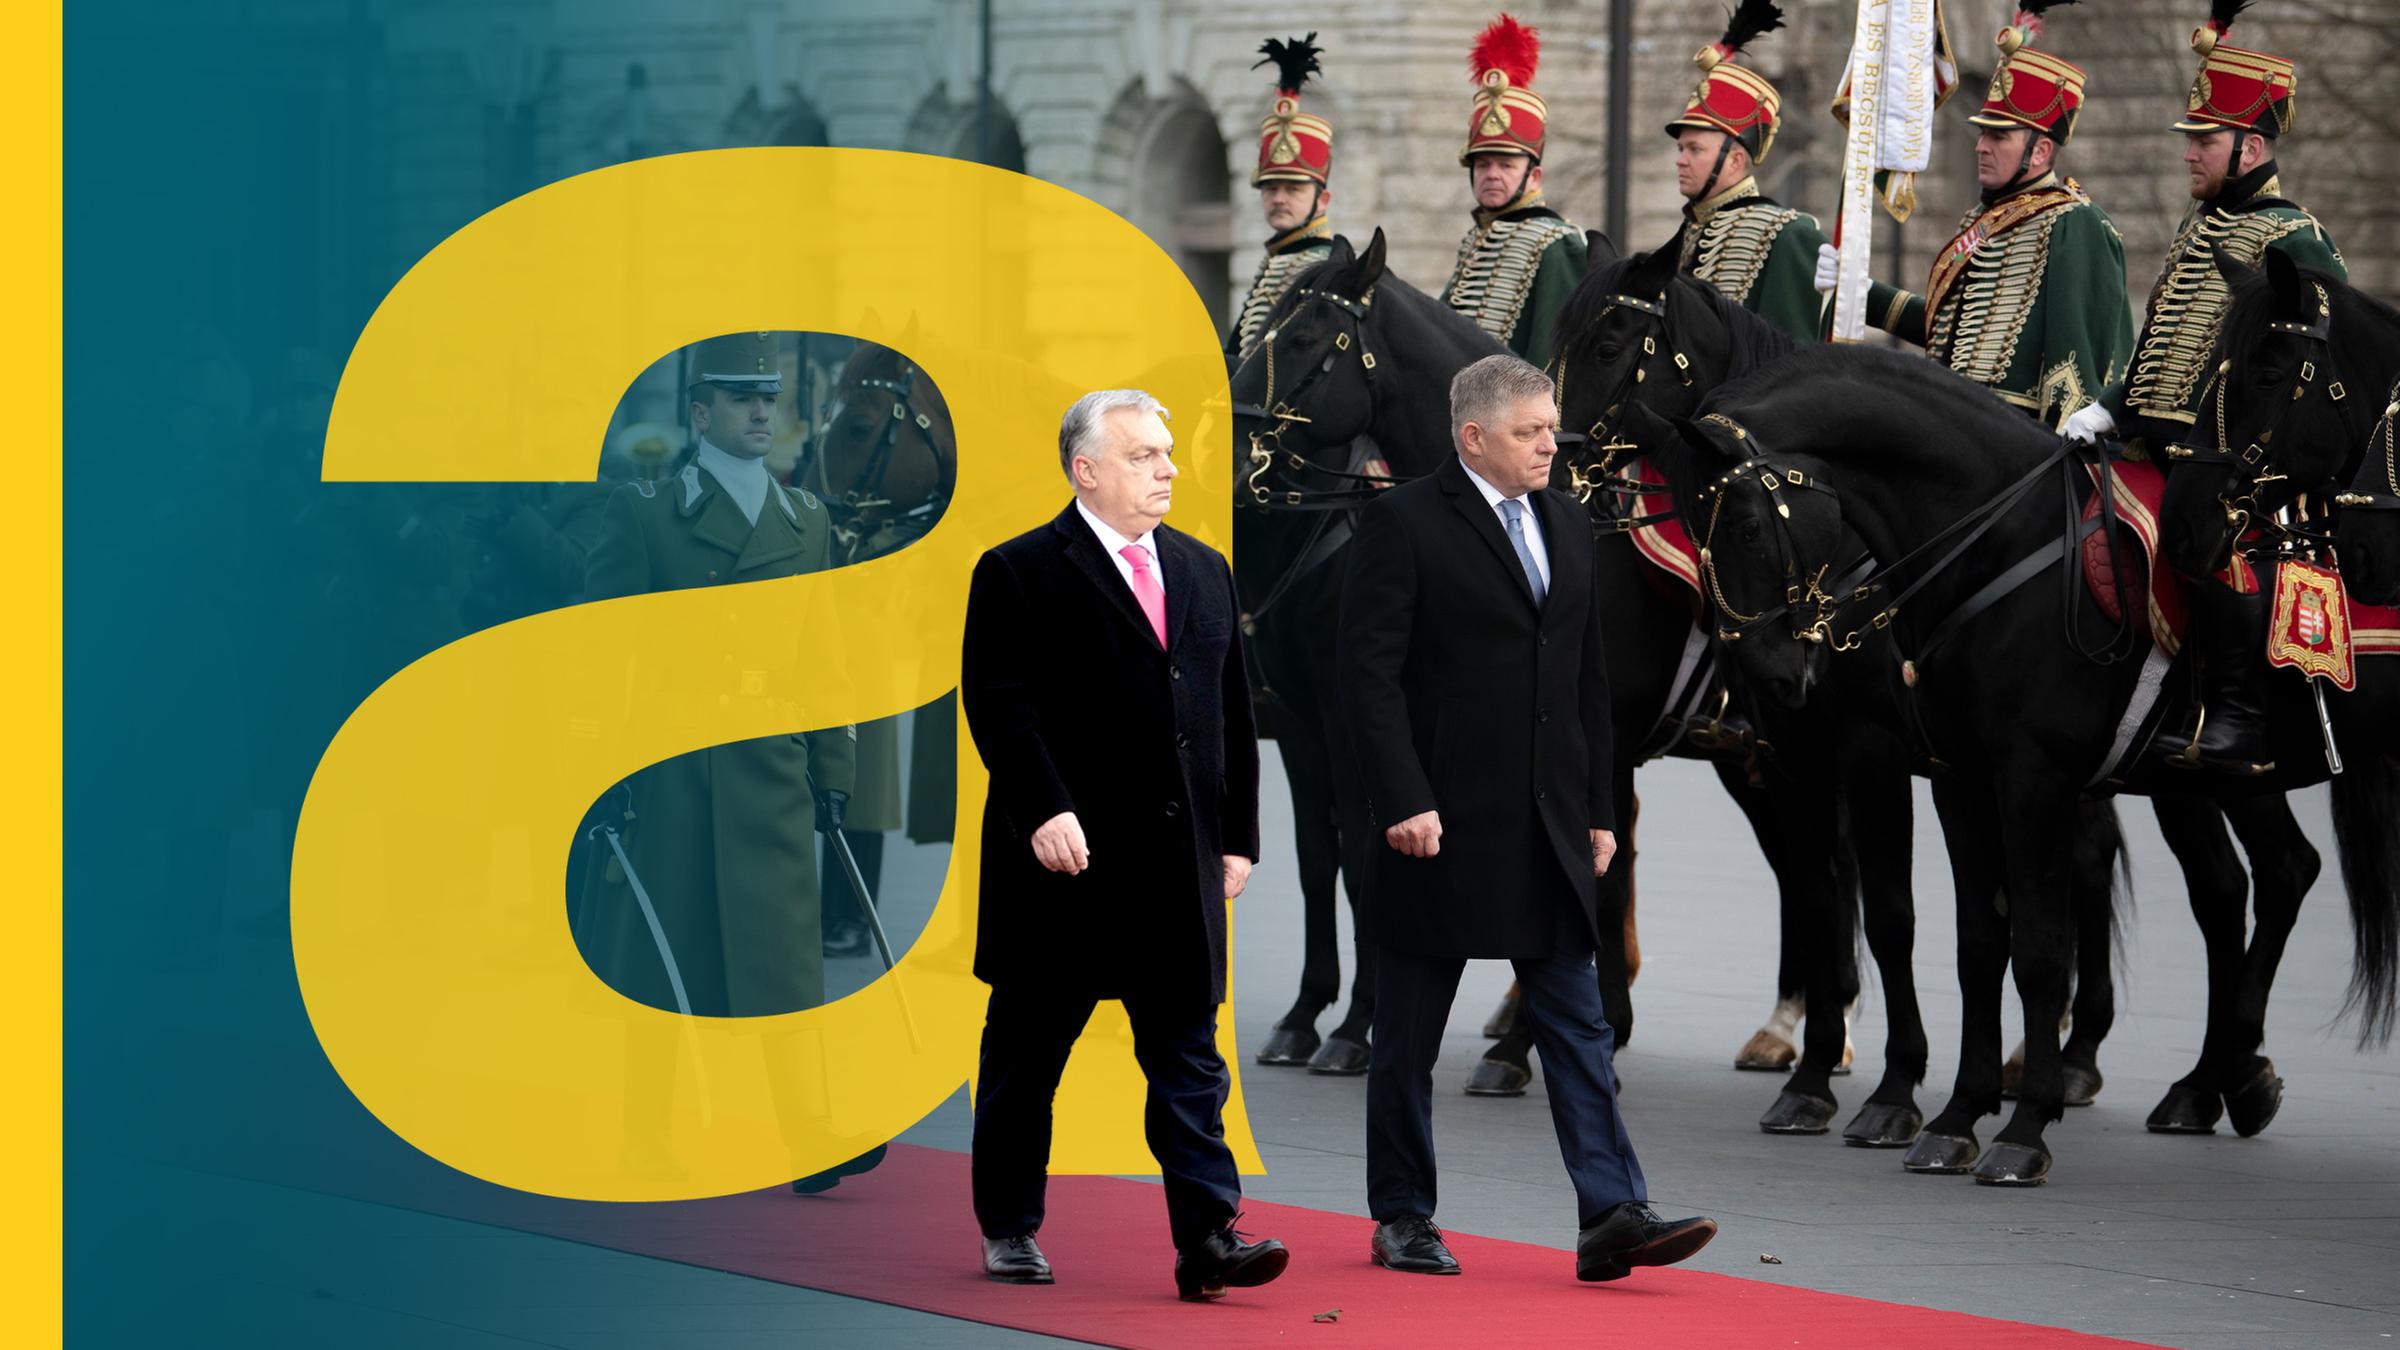 Soldaten auf Pferden zu Fuß. Politiker im Vordergrund mit großem auslandsjournal Logo